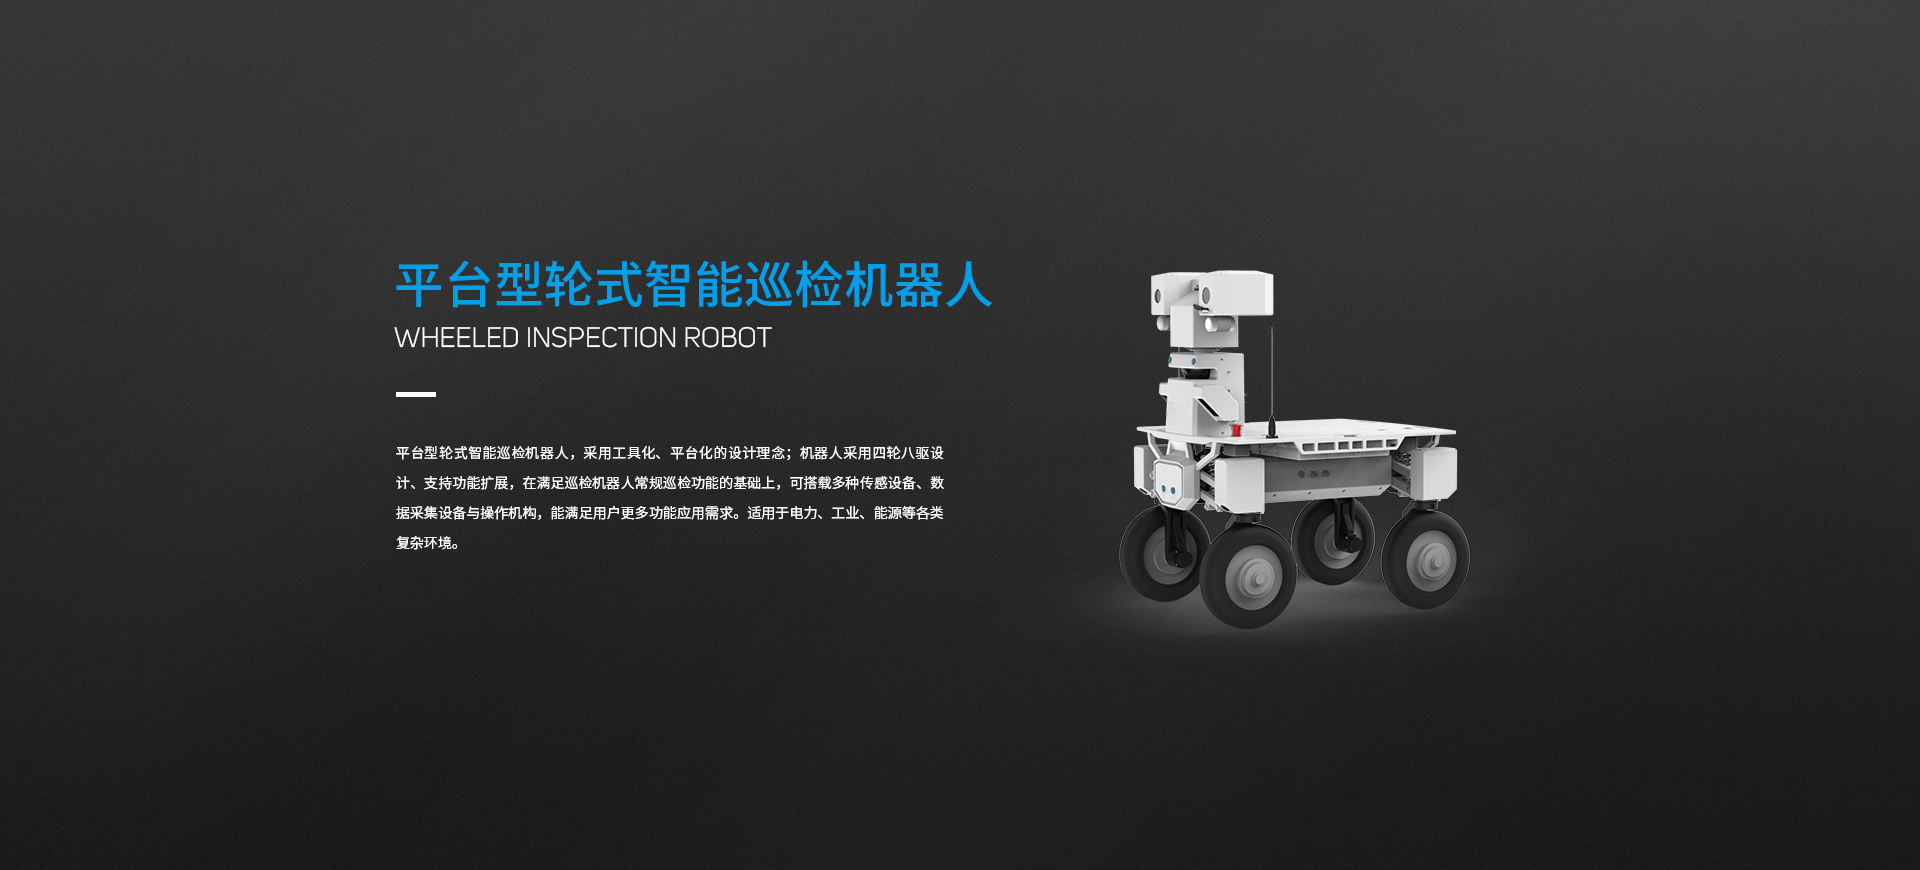 平台型轮式智能巡检机器人图片